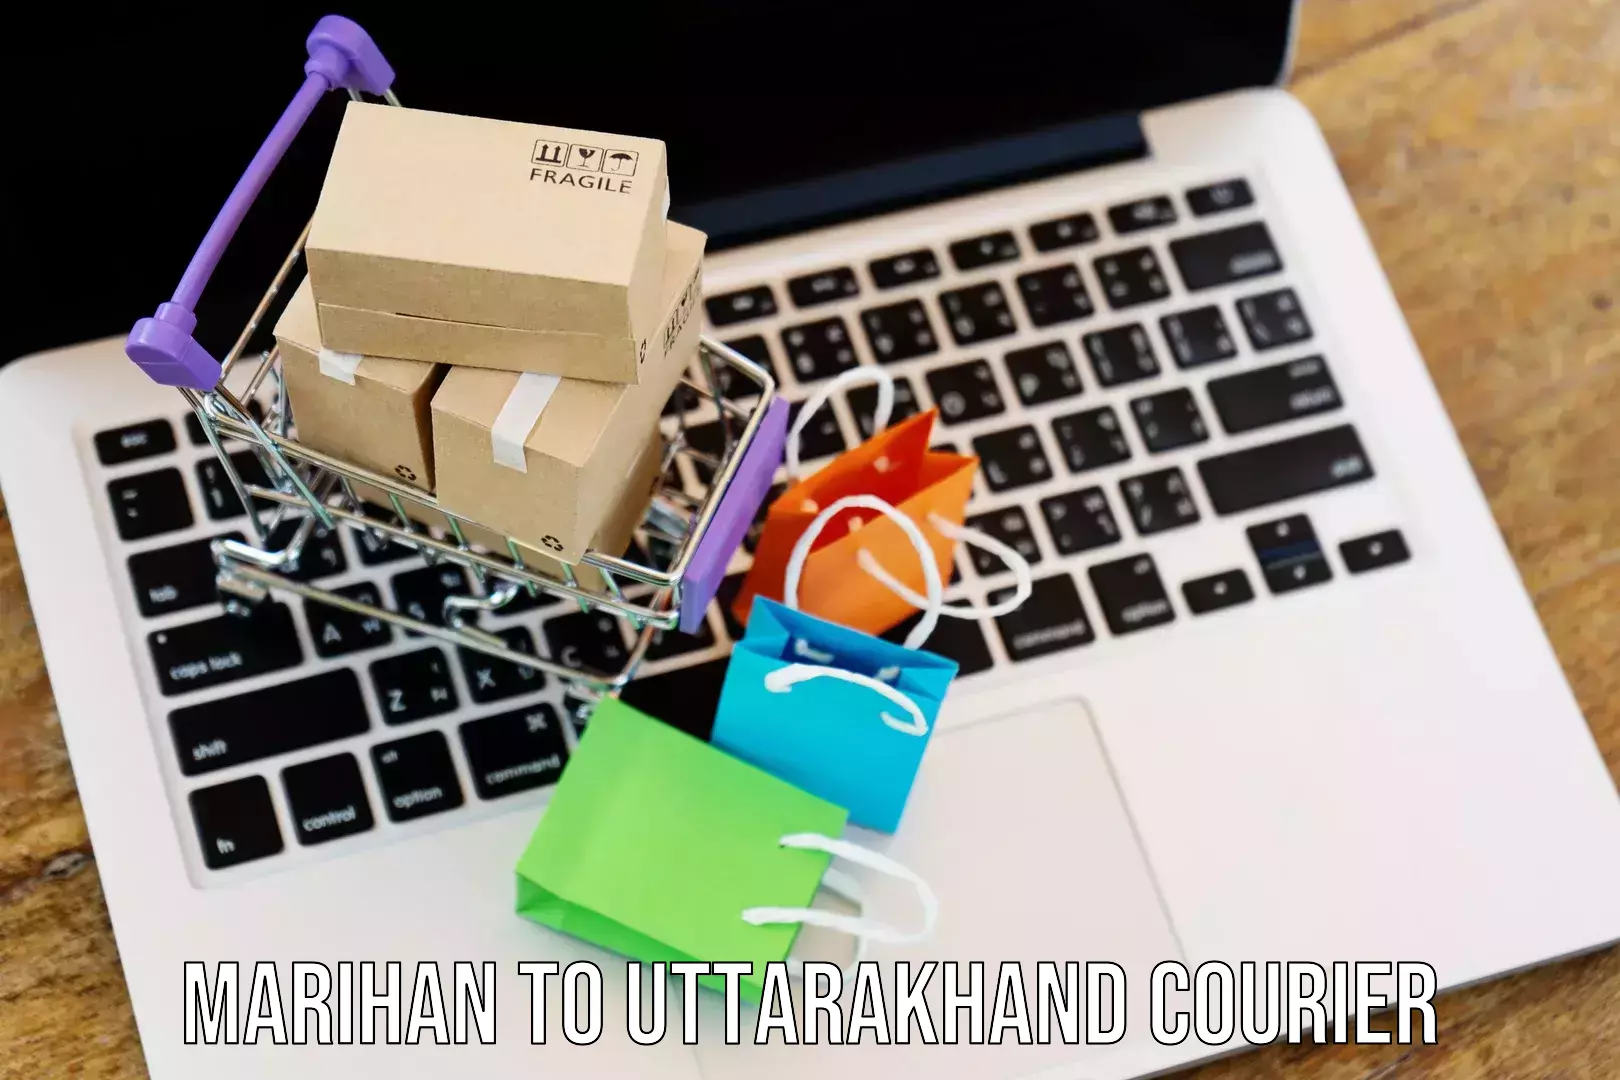 Courier app Marihan to Uttarakhand